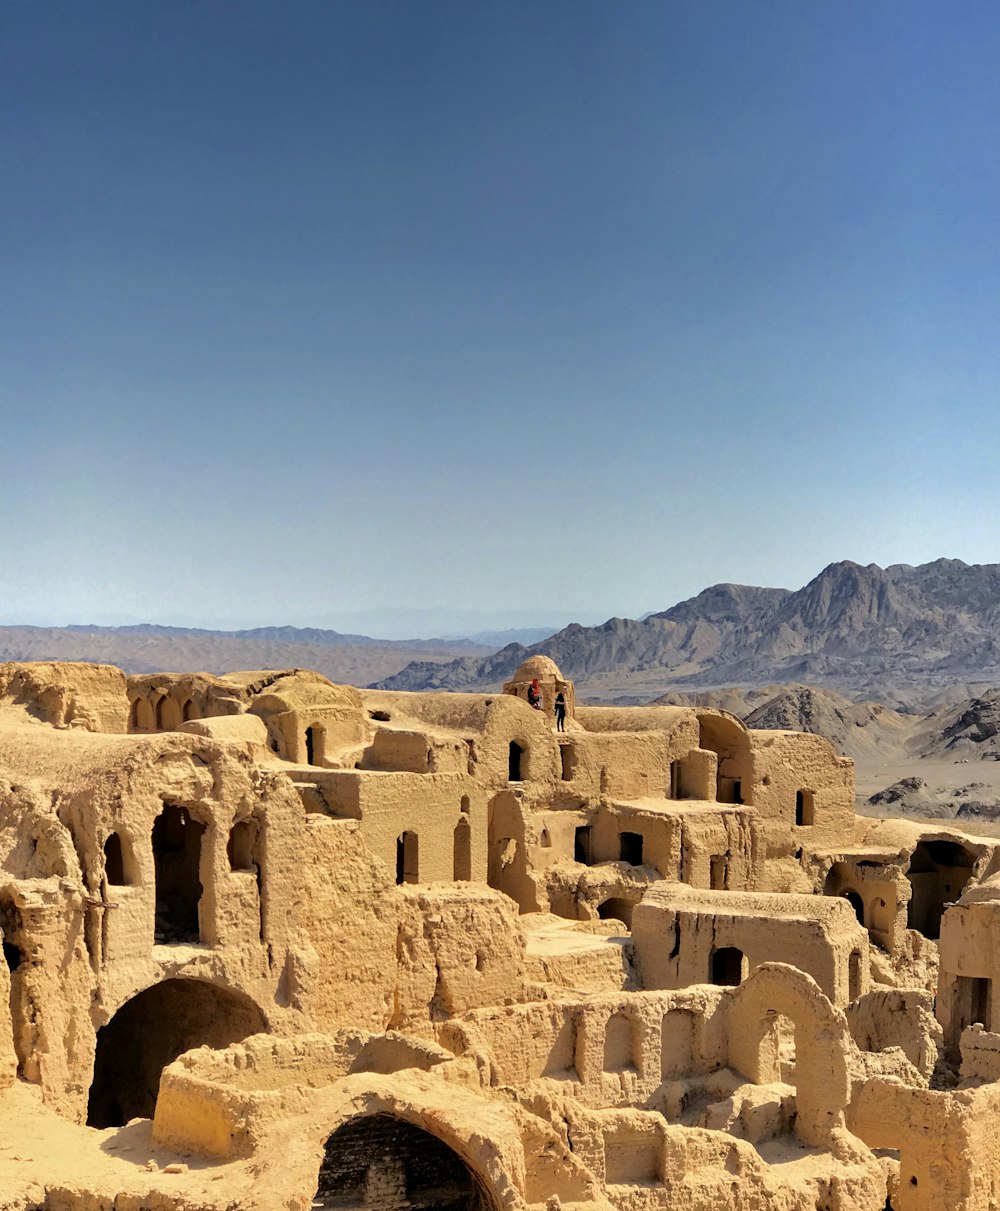 Eine Gruppe von Gebäuden in der Wüste mit Bergen im Hintergrund